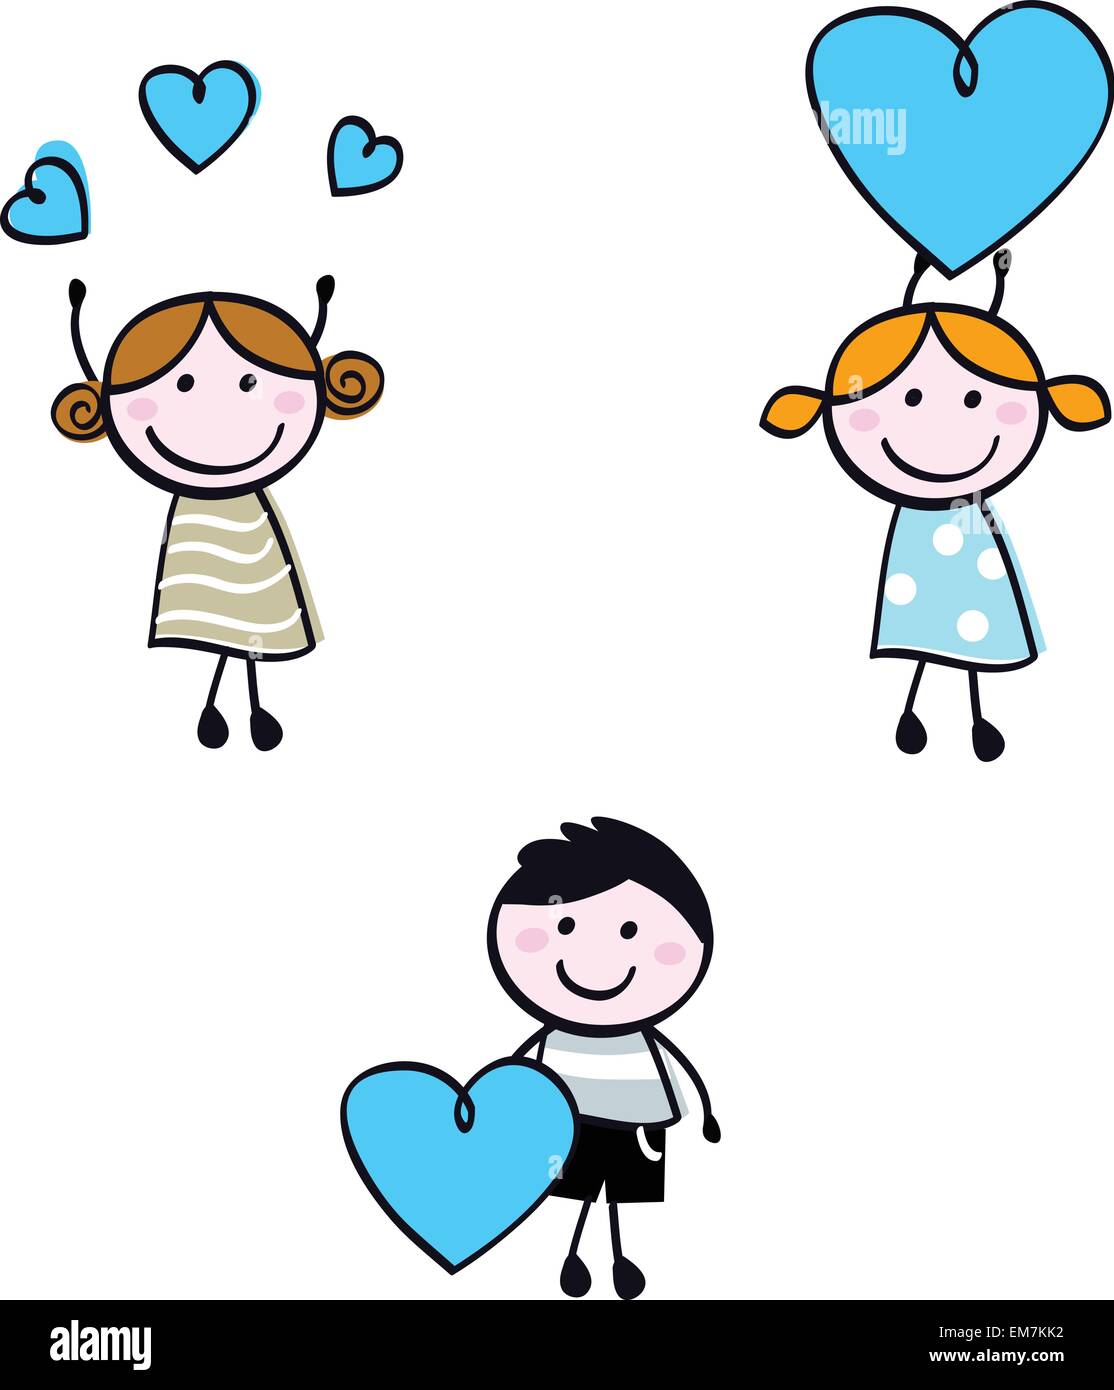 Halten Sie Doodle Kinder Figuren mit Herz-Banner Stock-Vektorgrafik - Alamy